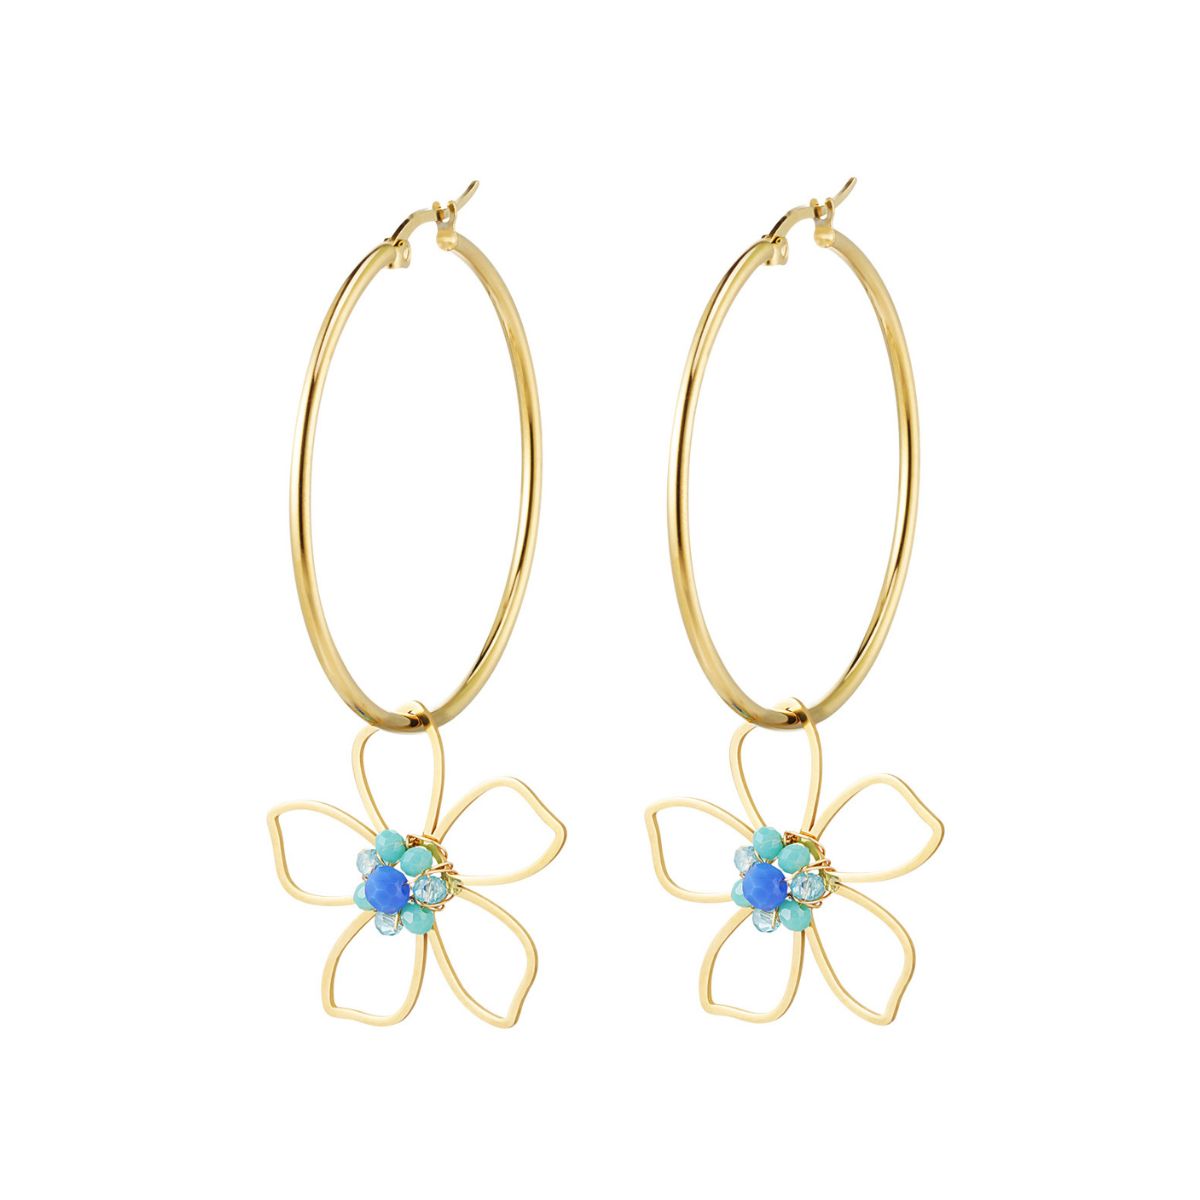 flower-hoop-earrings-stainless-steel